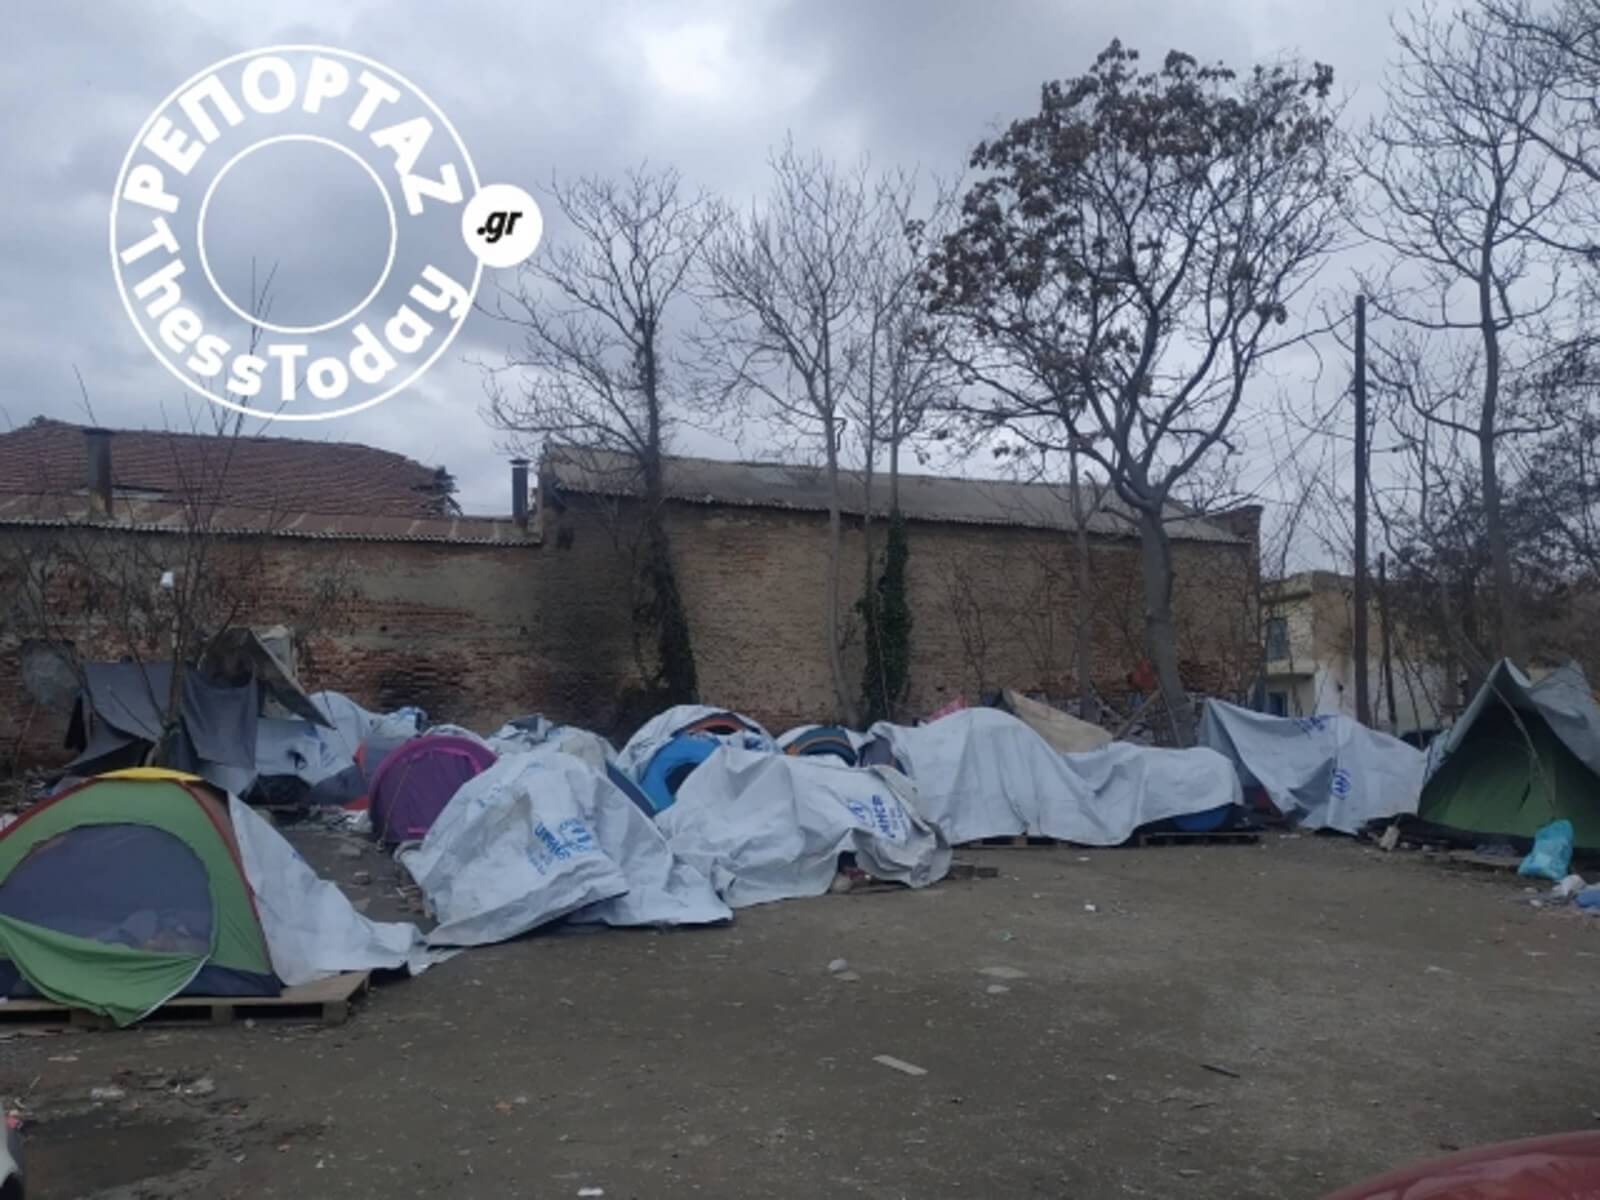 Εικόνες θλίψης! Καταυλισμός προσφύγων στο κέντρο της Θεσσαλονίκης [pics]